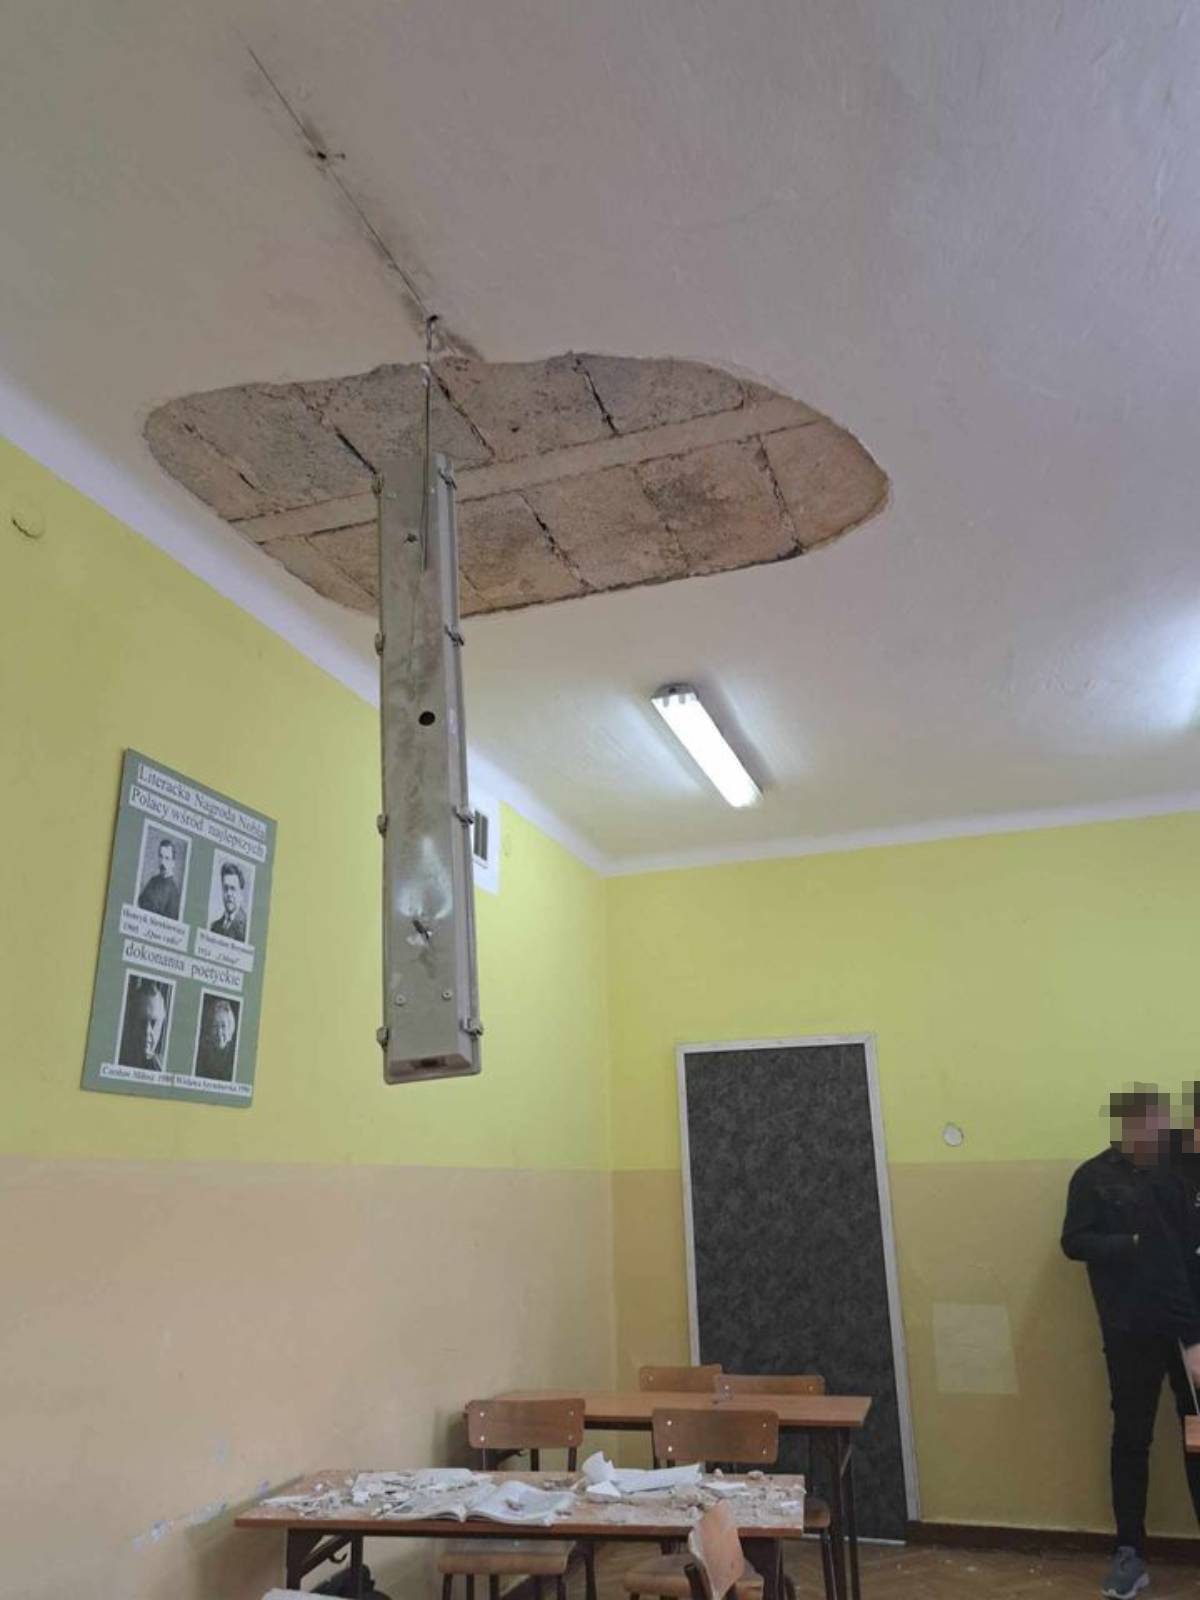 Tynk zerwał się z sufitu i spadł na uczniów w Zespole Szkół Energetycznych w Lublinie